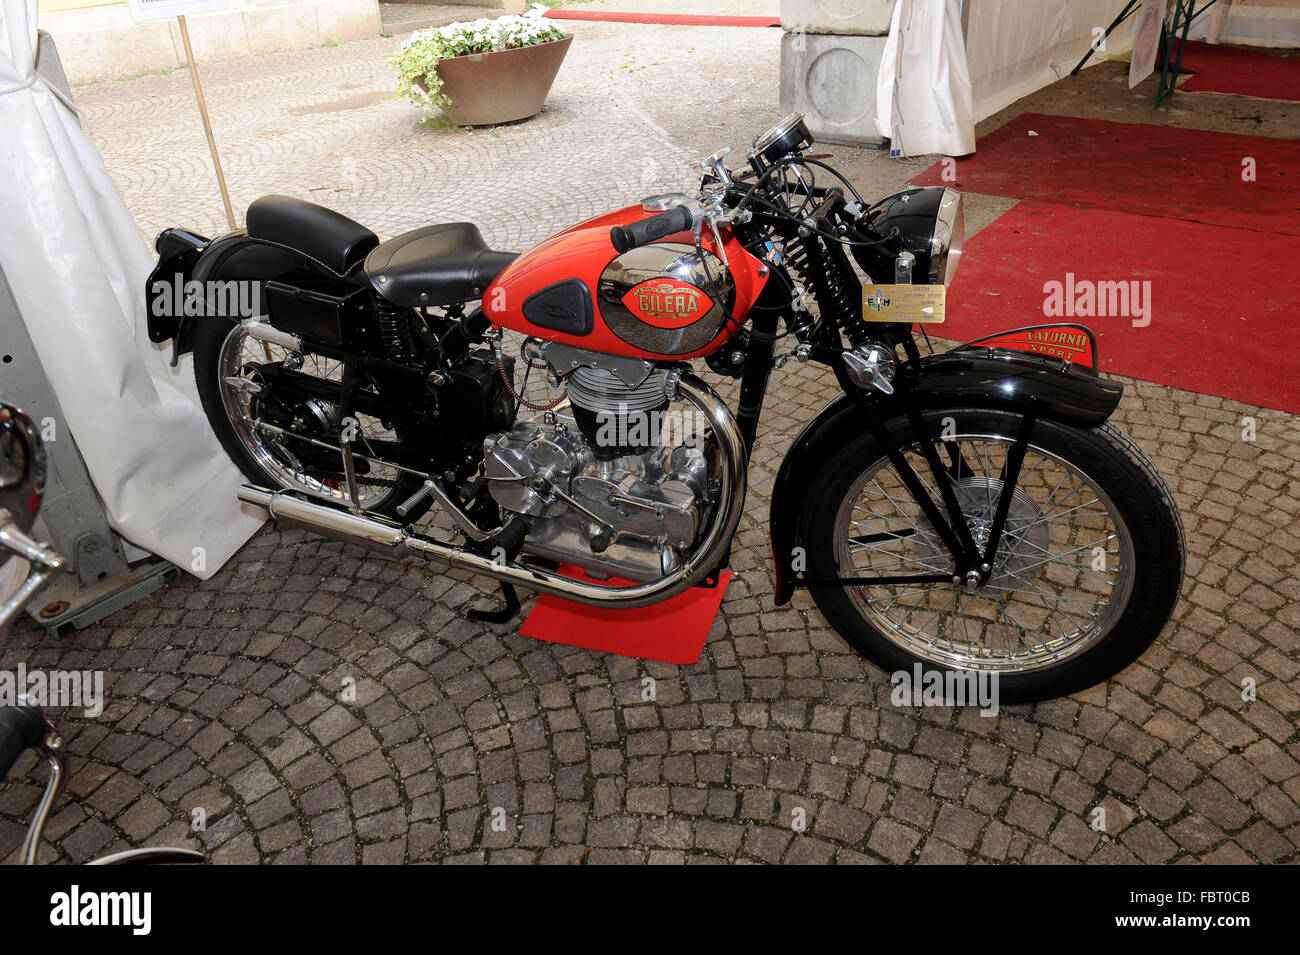 Arcore - Esposizione di modelli storici della fabbrica biciclette Gilera.  Saturno modello 500 Sport 1952 Foto stock - Alamy